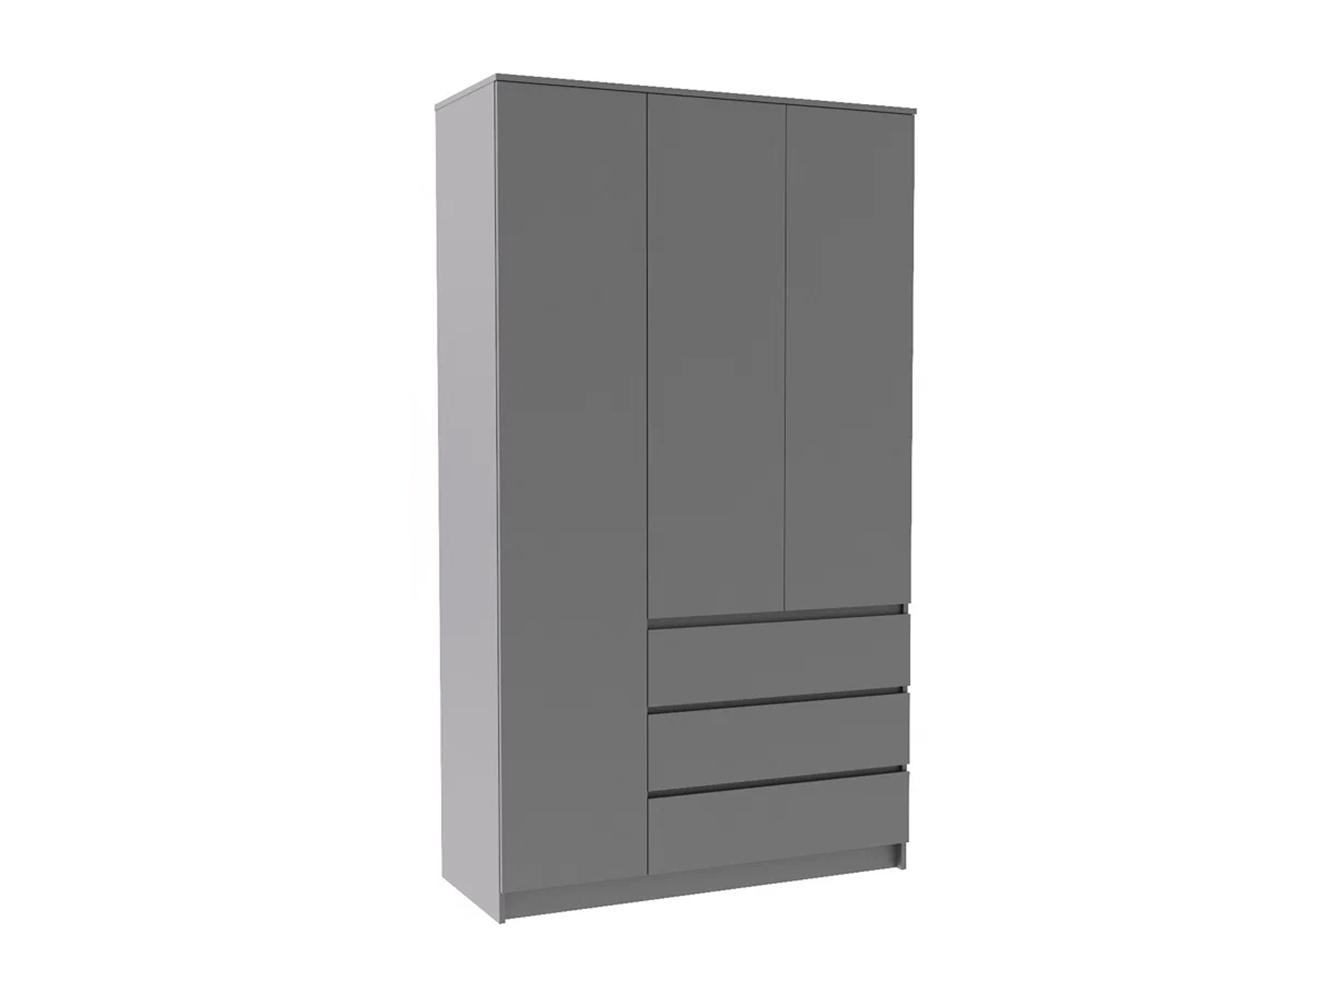 Распашной шкаф Мальм 314 grey ИКЕА (IKEA) изображение товара